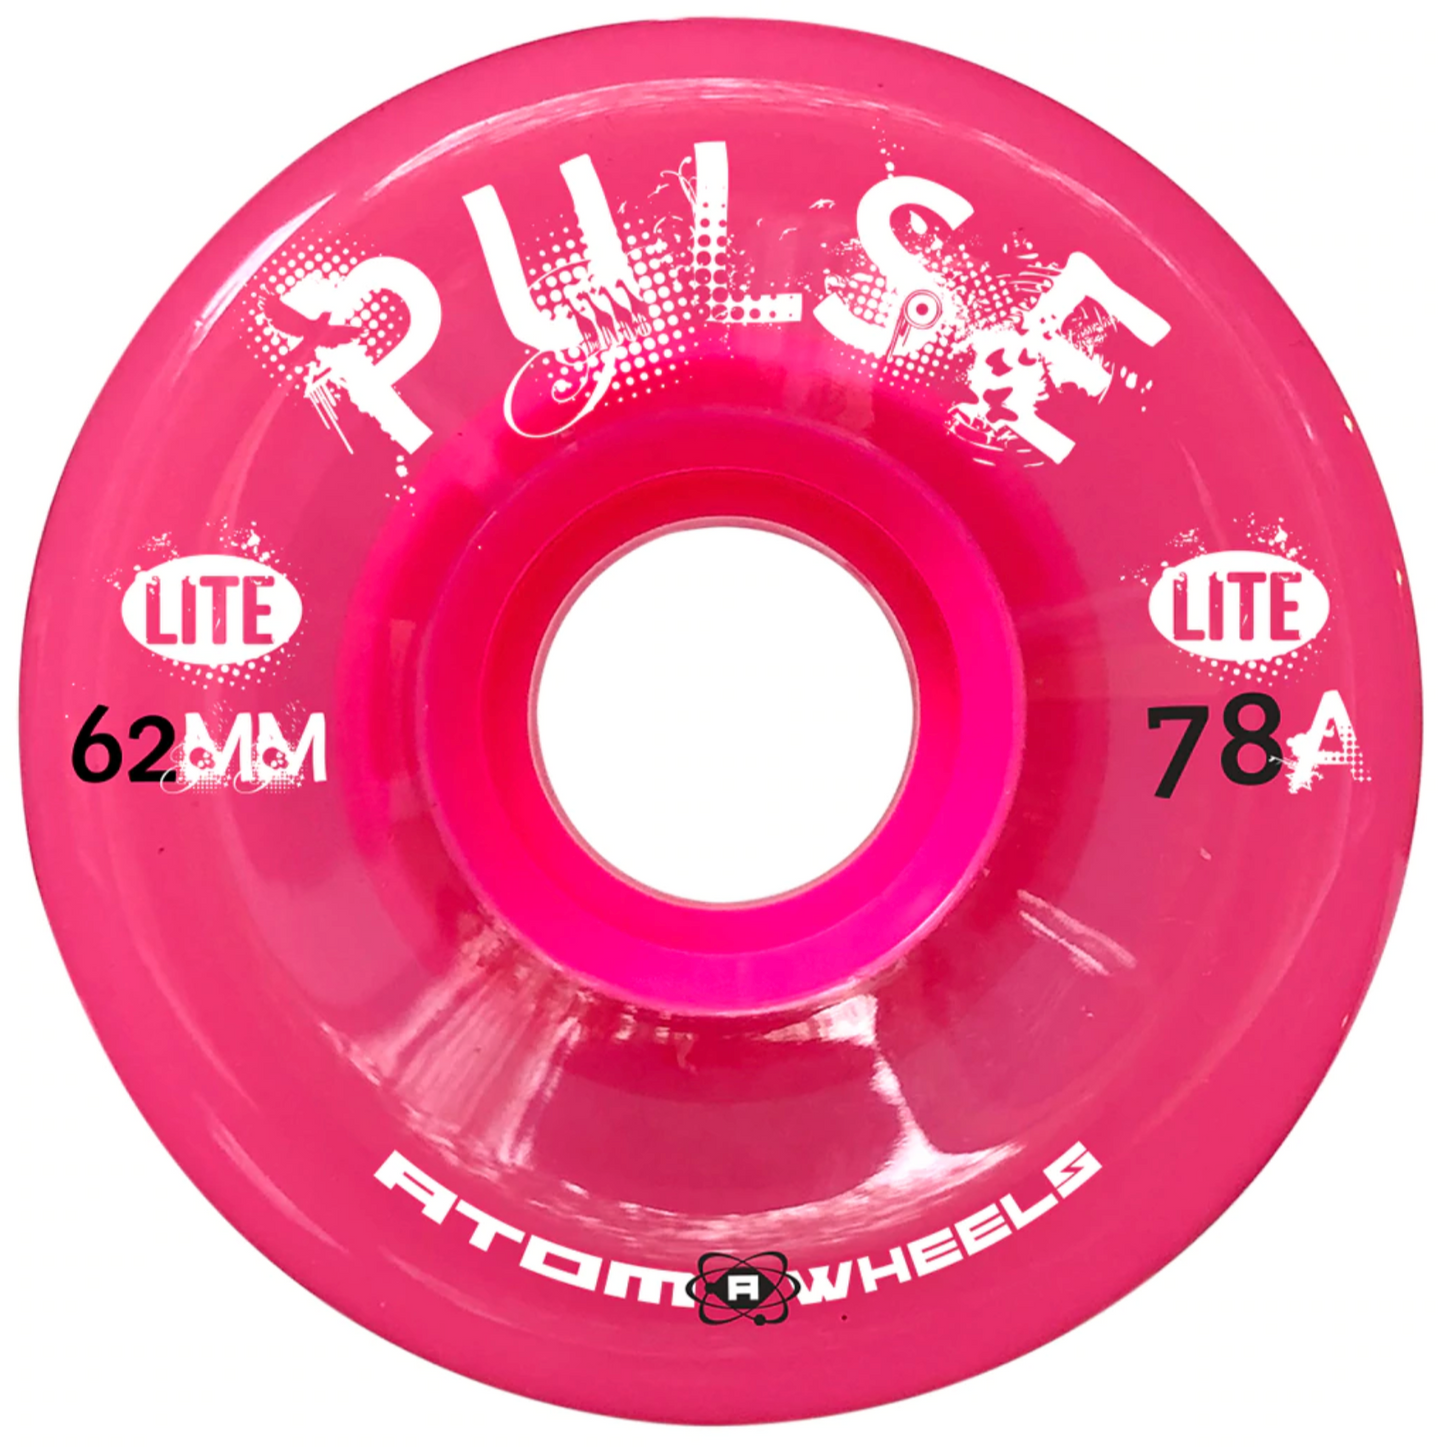 Ruote Atom Pulse Lite FUCSIA | 78A x 62mm | Ruote da esterno per pattini a rotelle quad - pack da 4 ruote